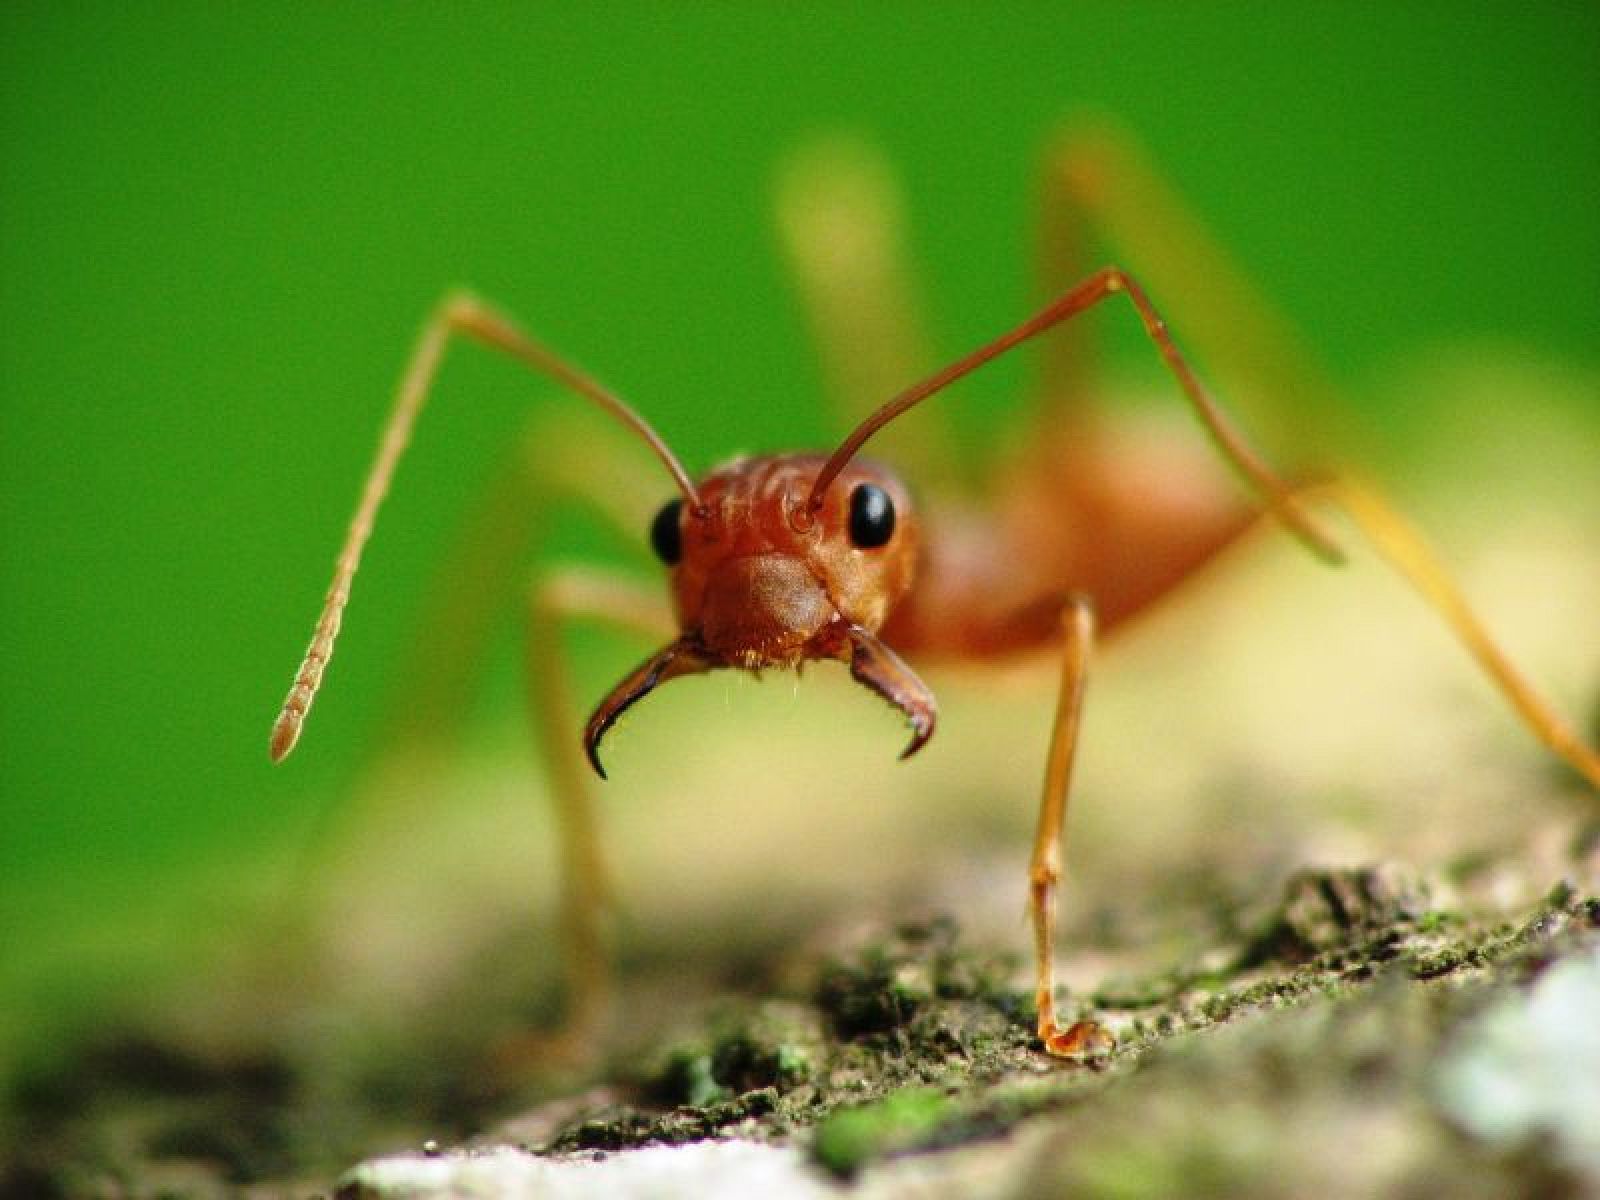 Un ejemplar de 'Oecophylla smaragdina', las hormigas estudiadas en la investigación